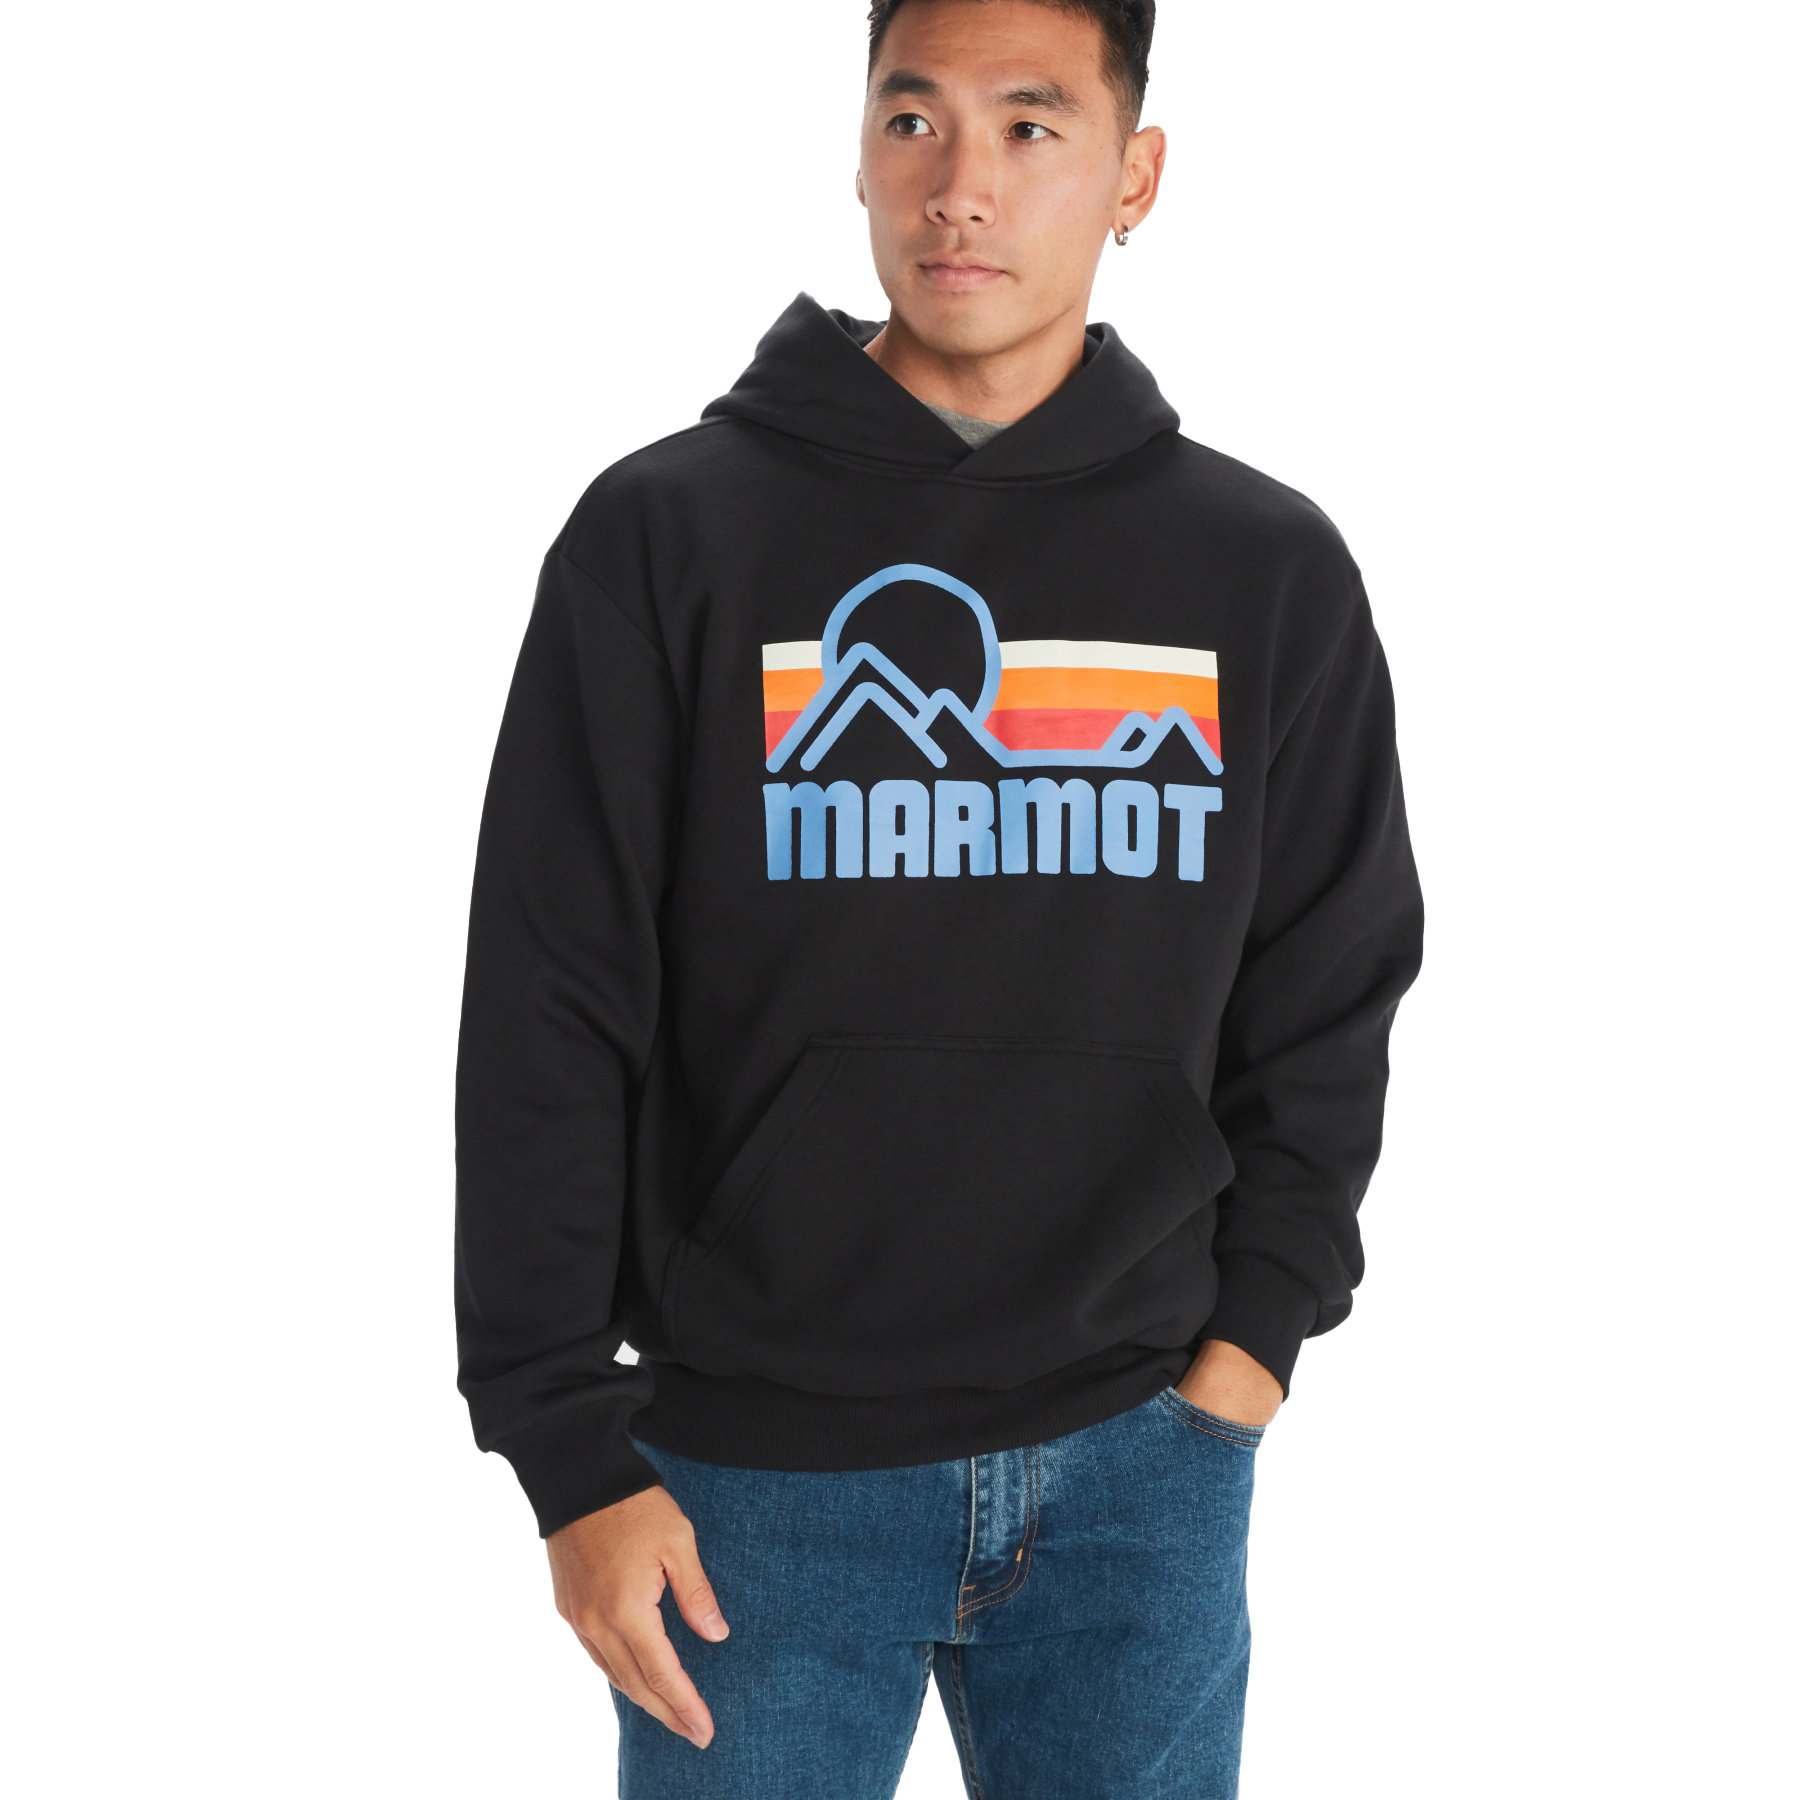 Produktbild von Marmot Coastal Kapuzenpullover Herren - schwarz